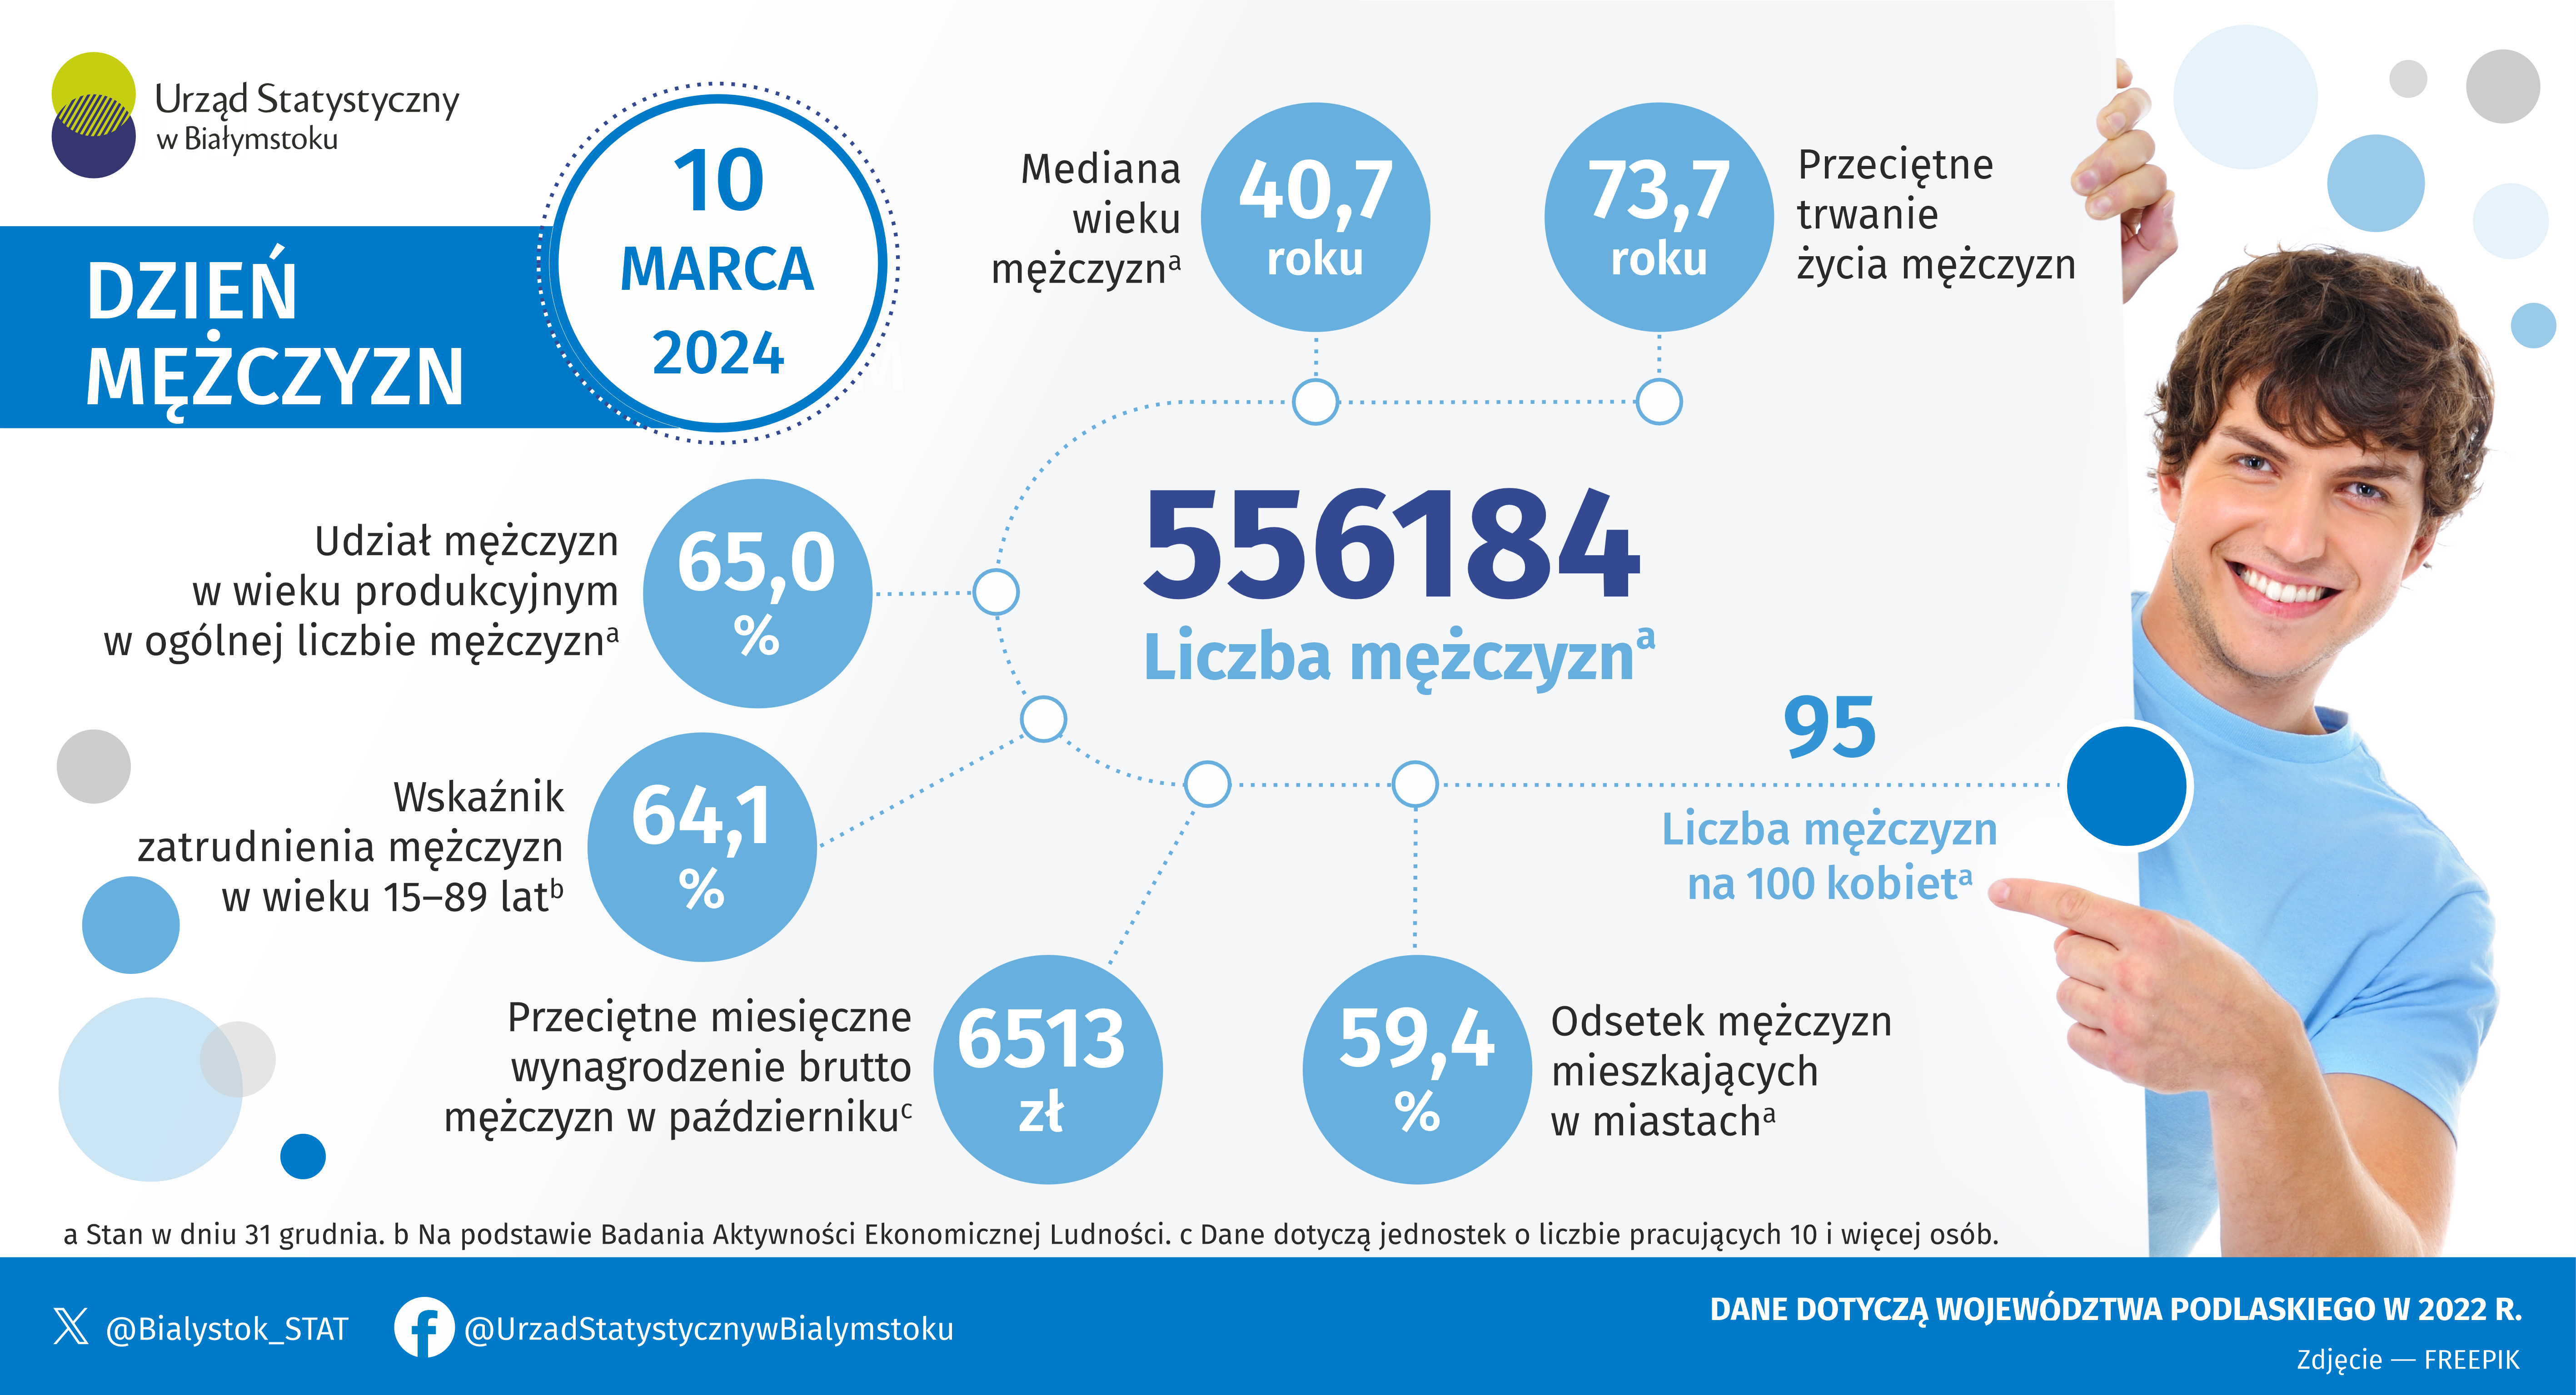 Infografika, która prezentuje podstawowe informacje na temat mężczyzn w województwie podlaskim w 2022 roku